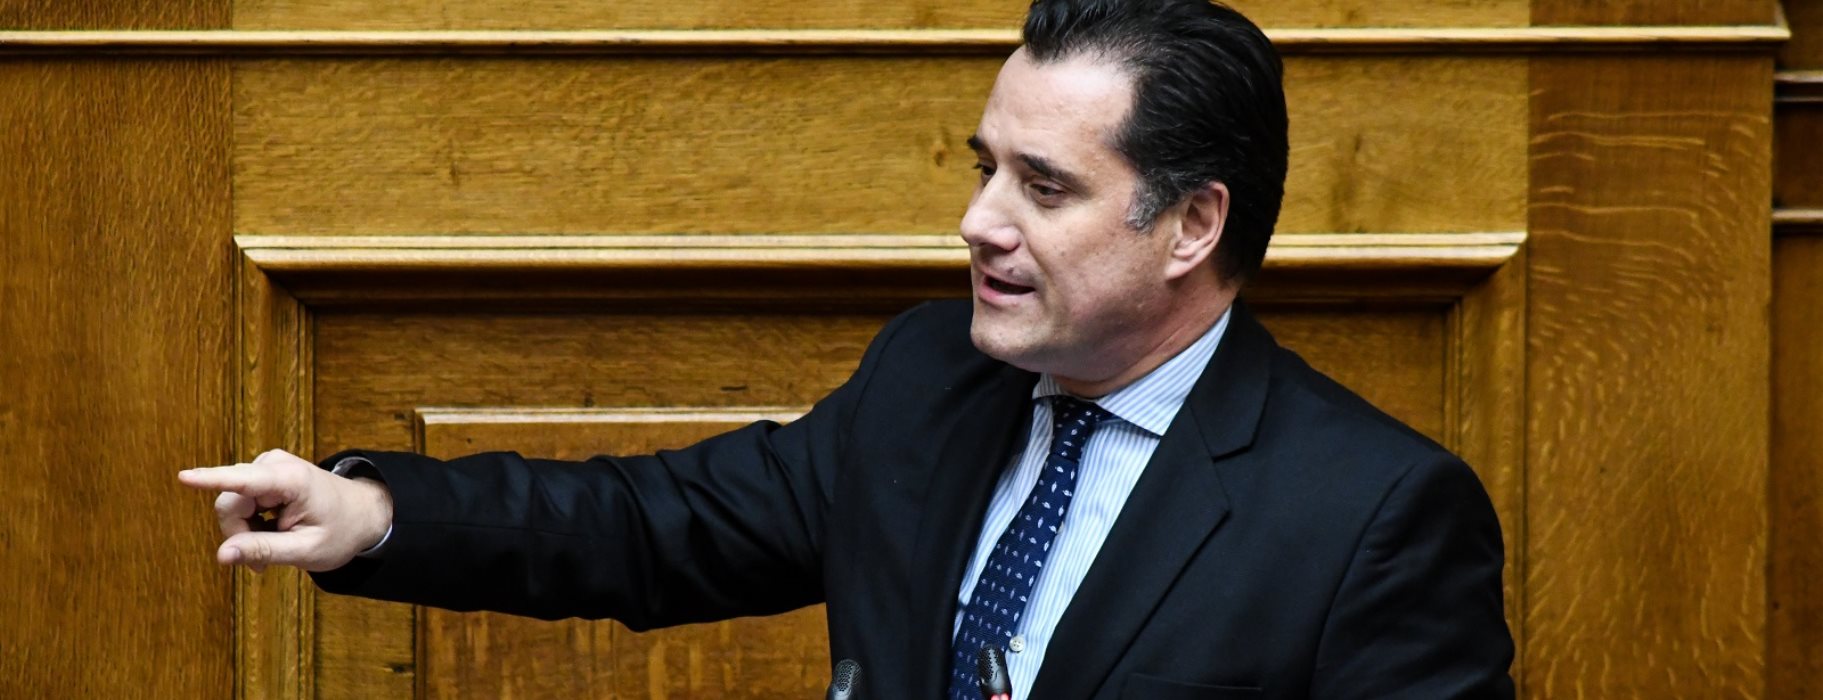 Α.Γεωργιάδης: «Δεν είναι αργή η διαδικασία για την επένδυση στο Ελληνικό, μόνο μια δικαστική απόφαση απομένει»